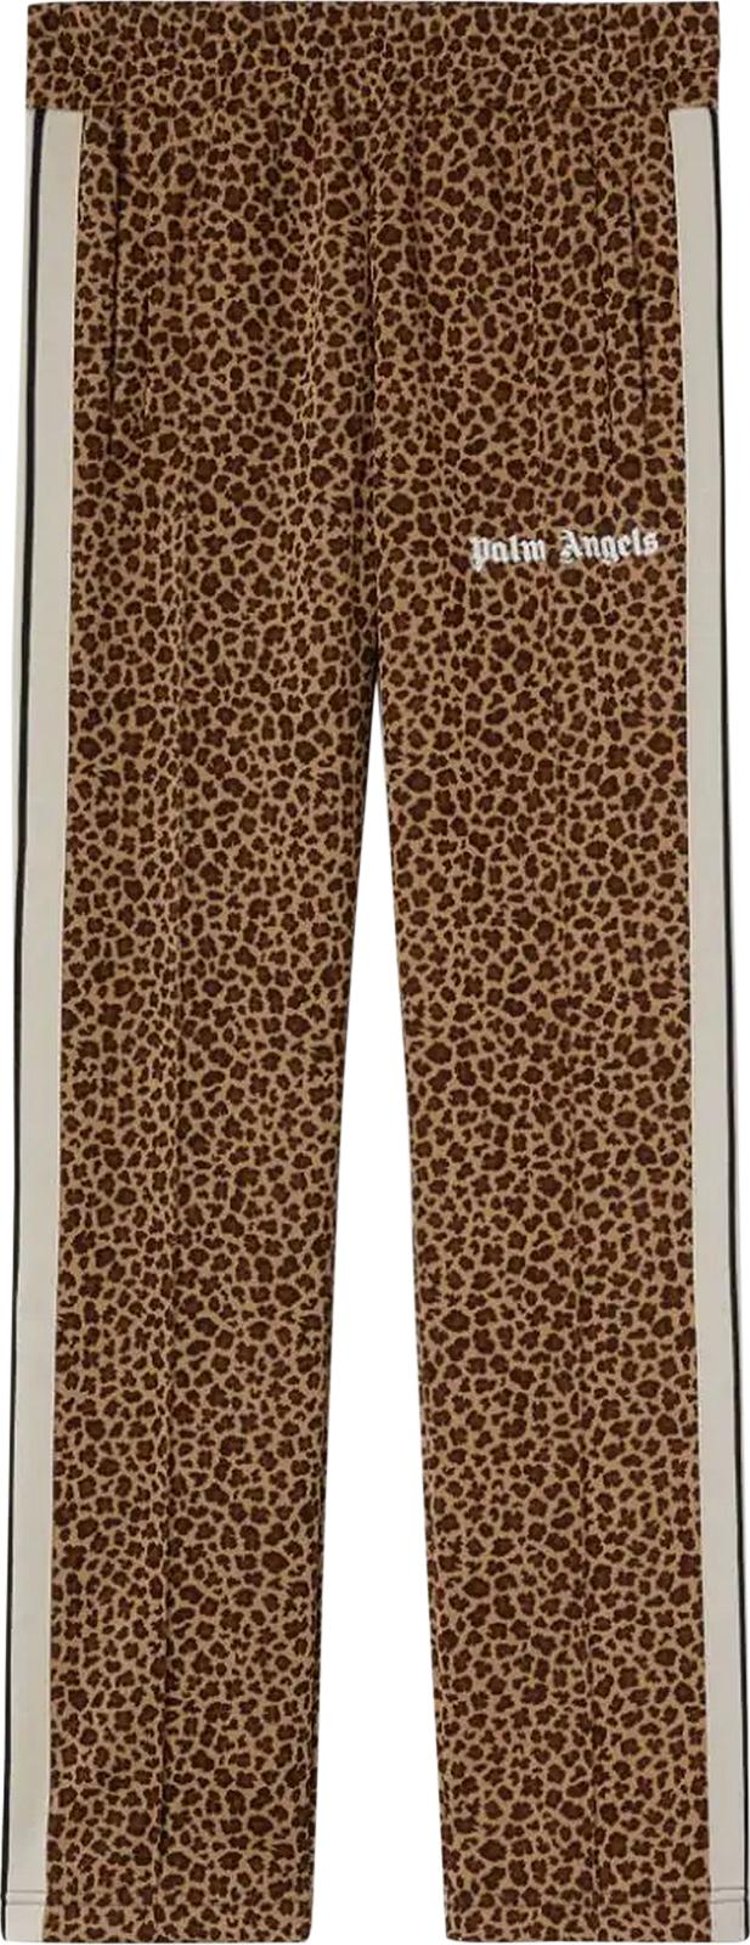 Брюки Palm Angels Leopard Jacquard Track Pants 'Beige/Off White', коричневый брюки palm angels pa jaquard track pants navy blue off white синий